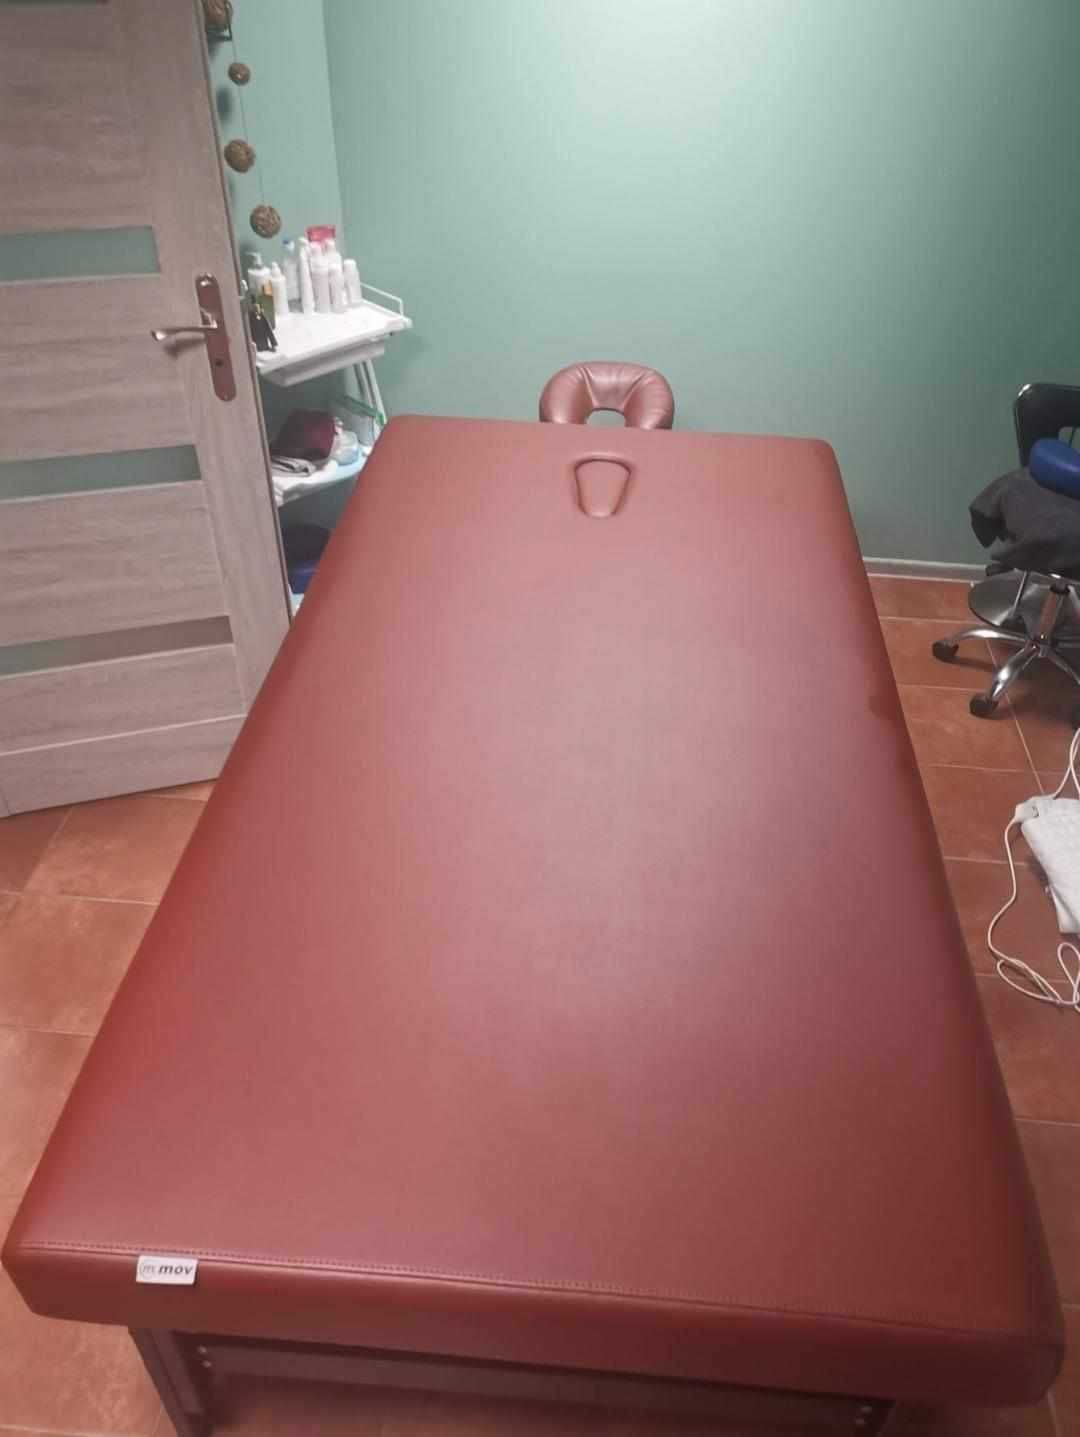 Łóżko do masażu tajskiego/relaksacyjnego